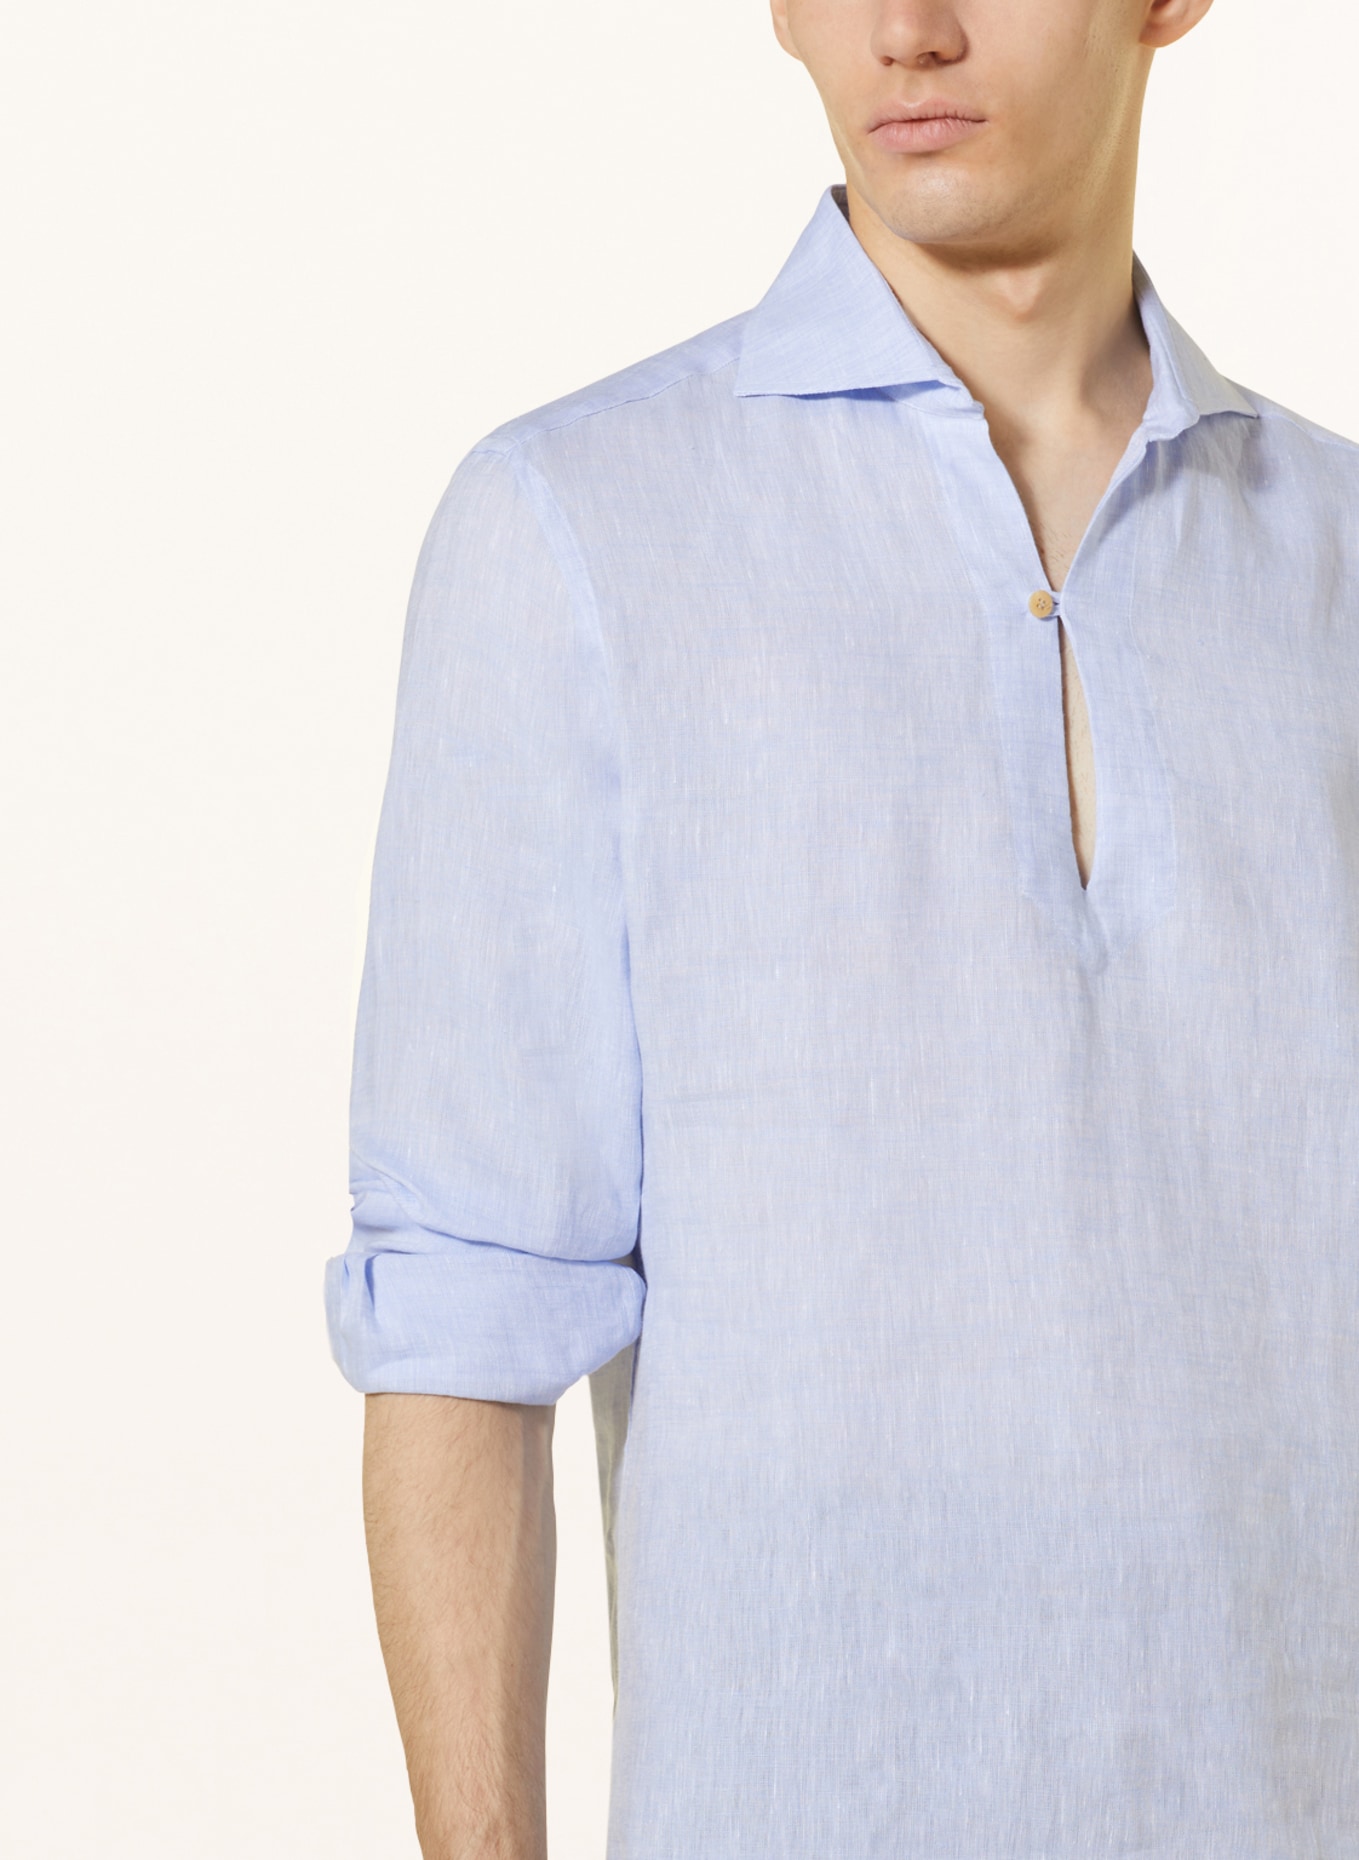 RIPA RIPA Linen shirt regular fit, Color: LIGHT BLUE (Image 4)